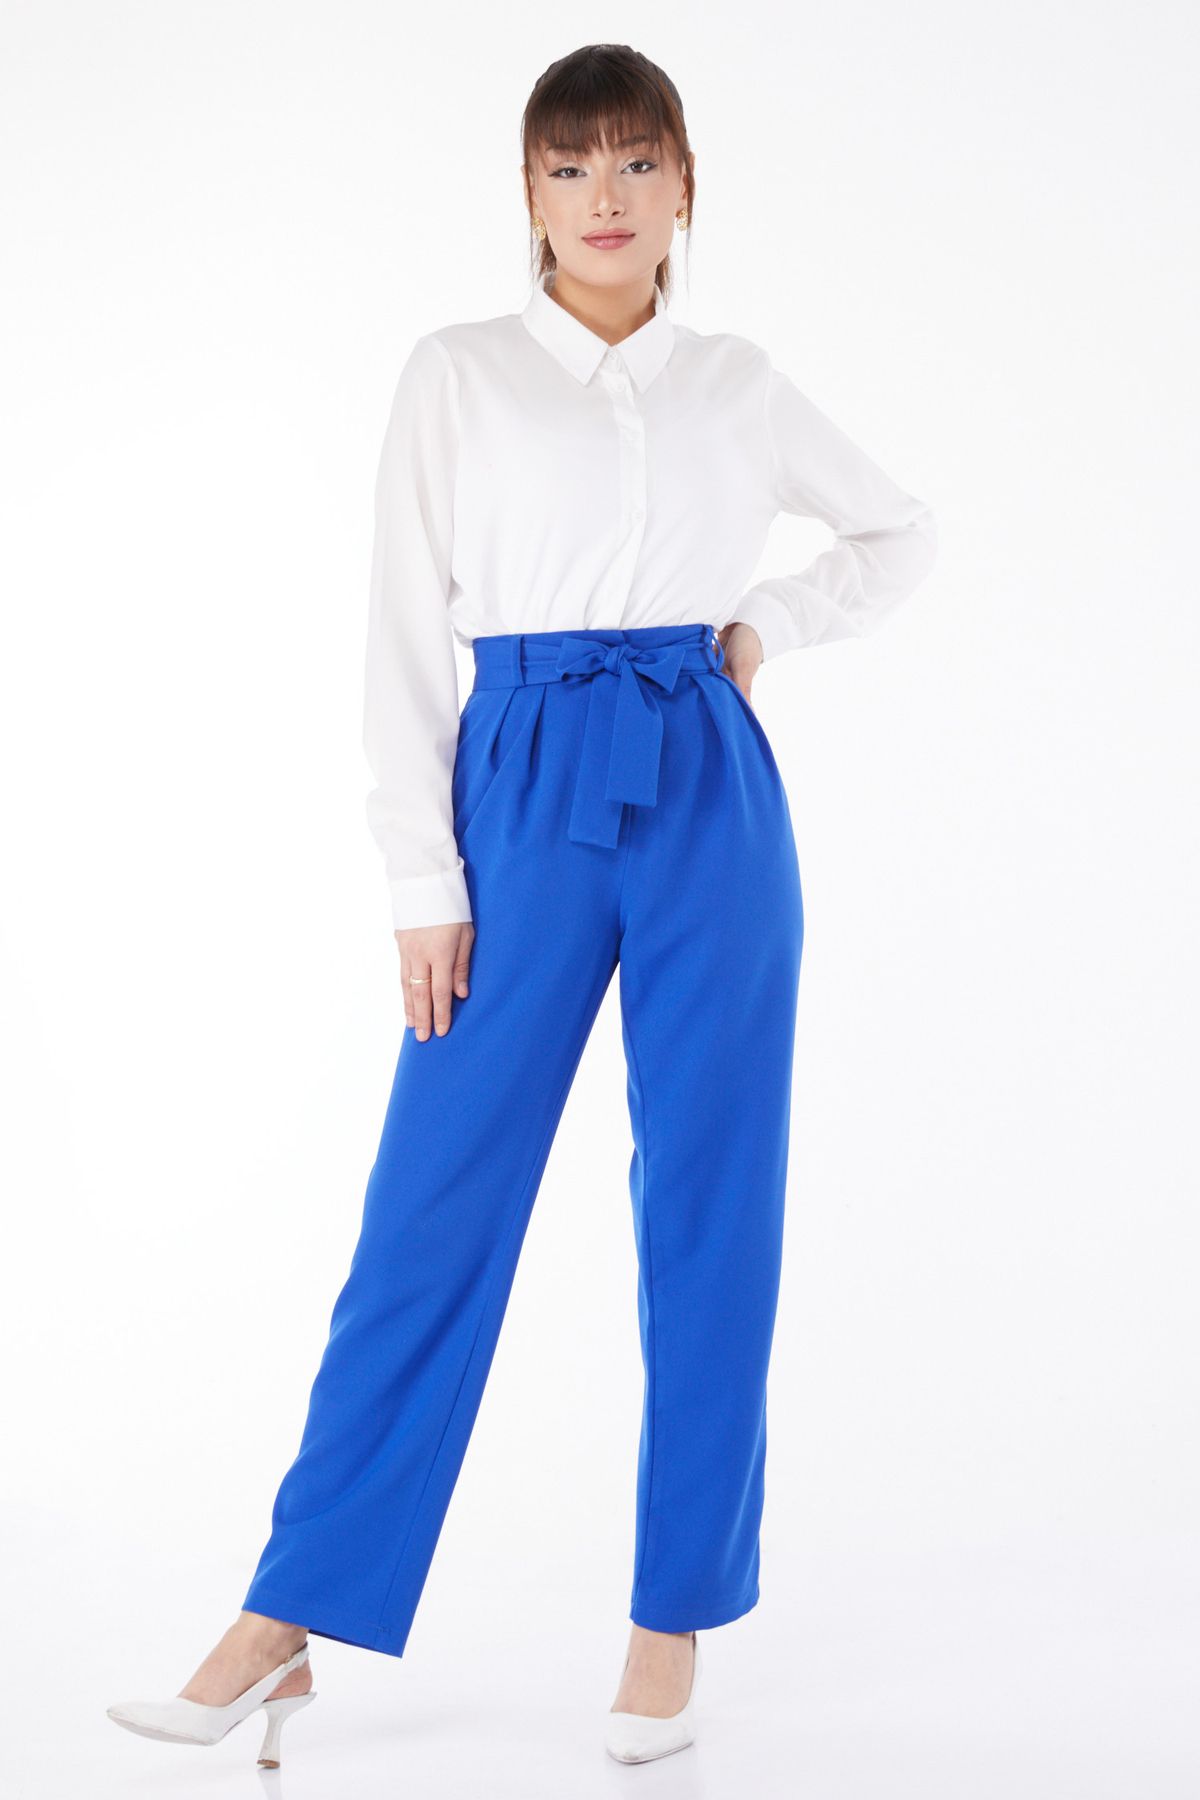 TOFİSA Düz Orta Kadın Mavi Klasik Kuşaklı Pantolon - 25035